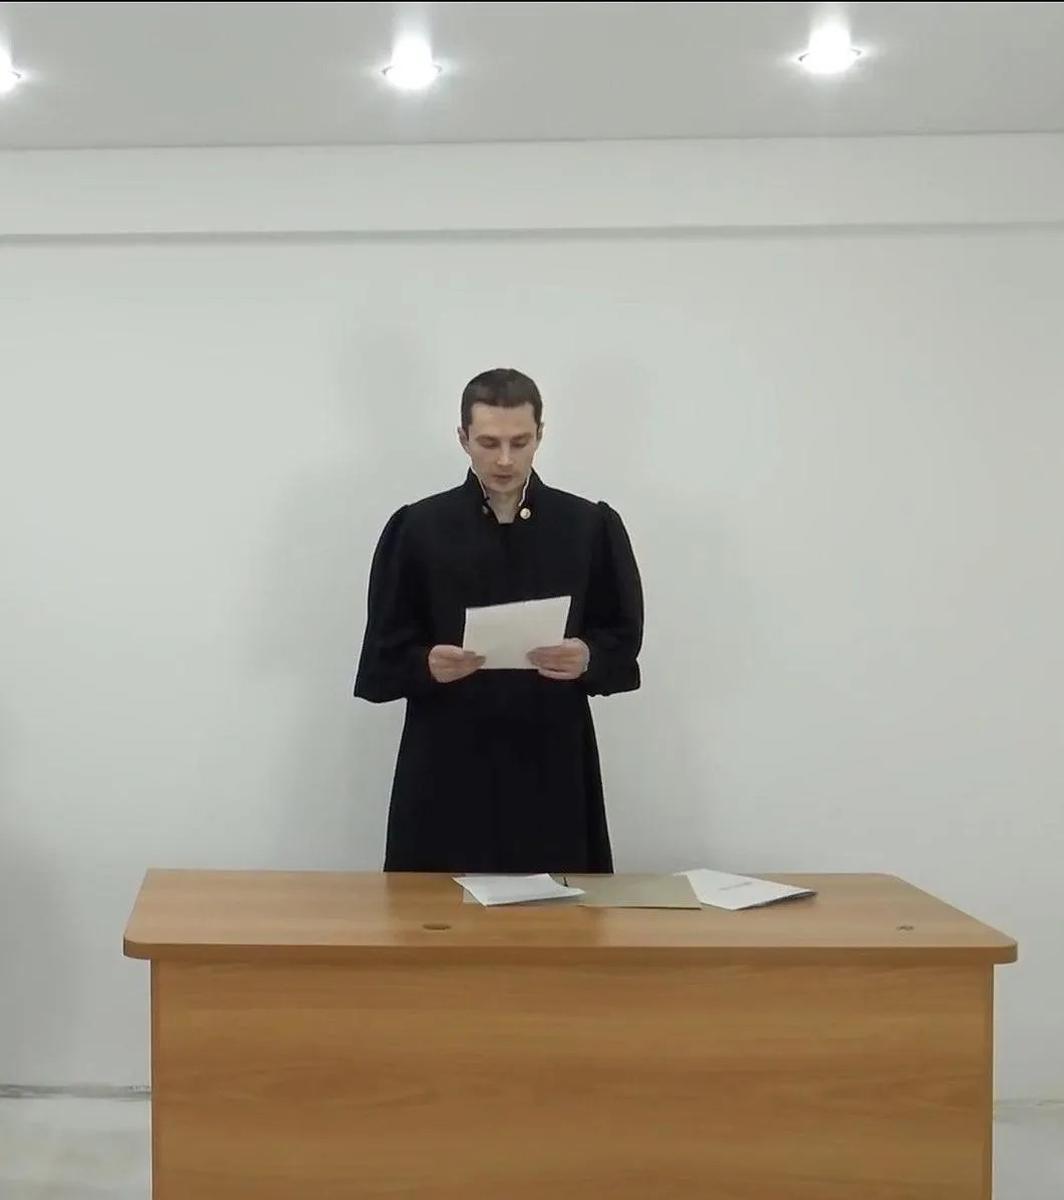 Скриншот из видео Карима Ямадаева в образе судьи Грэмма. YouTube